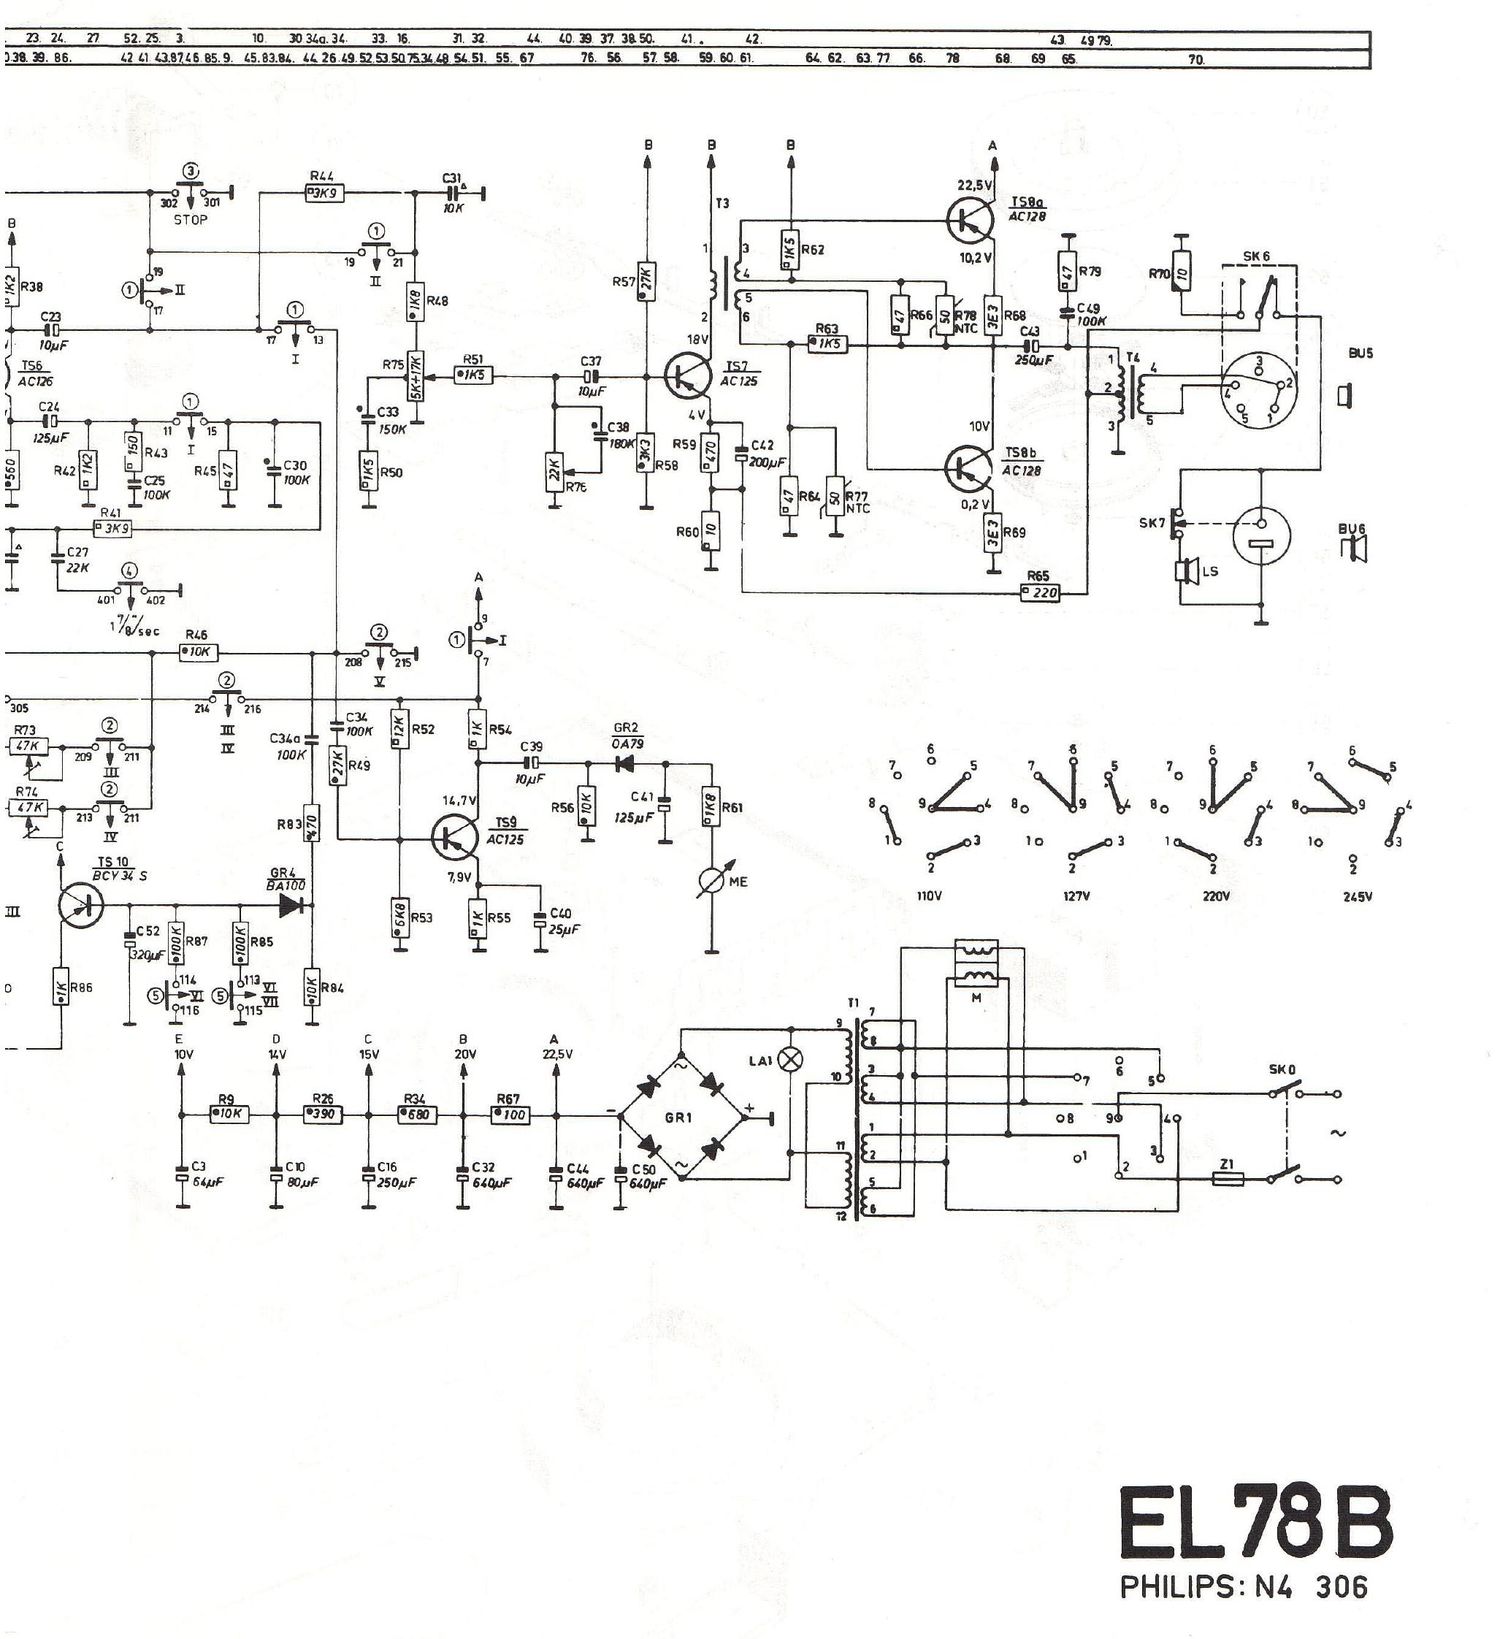 philips el 78 b schematic